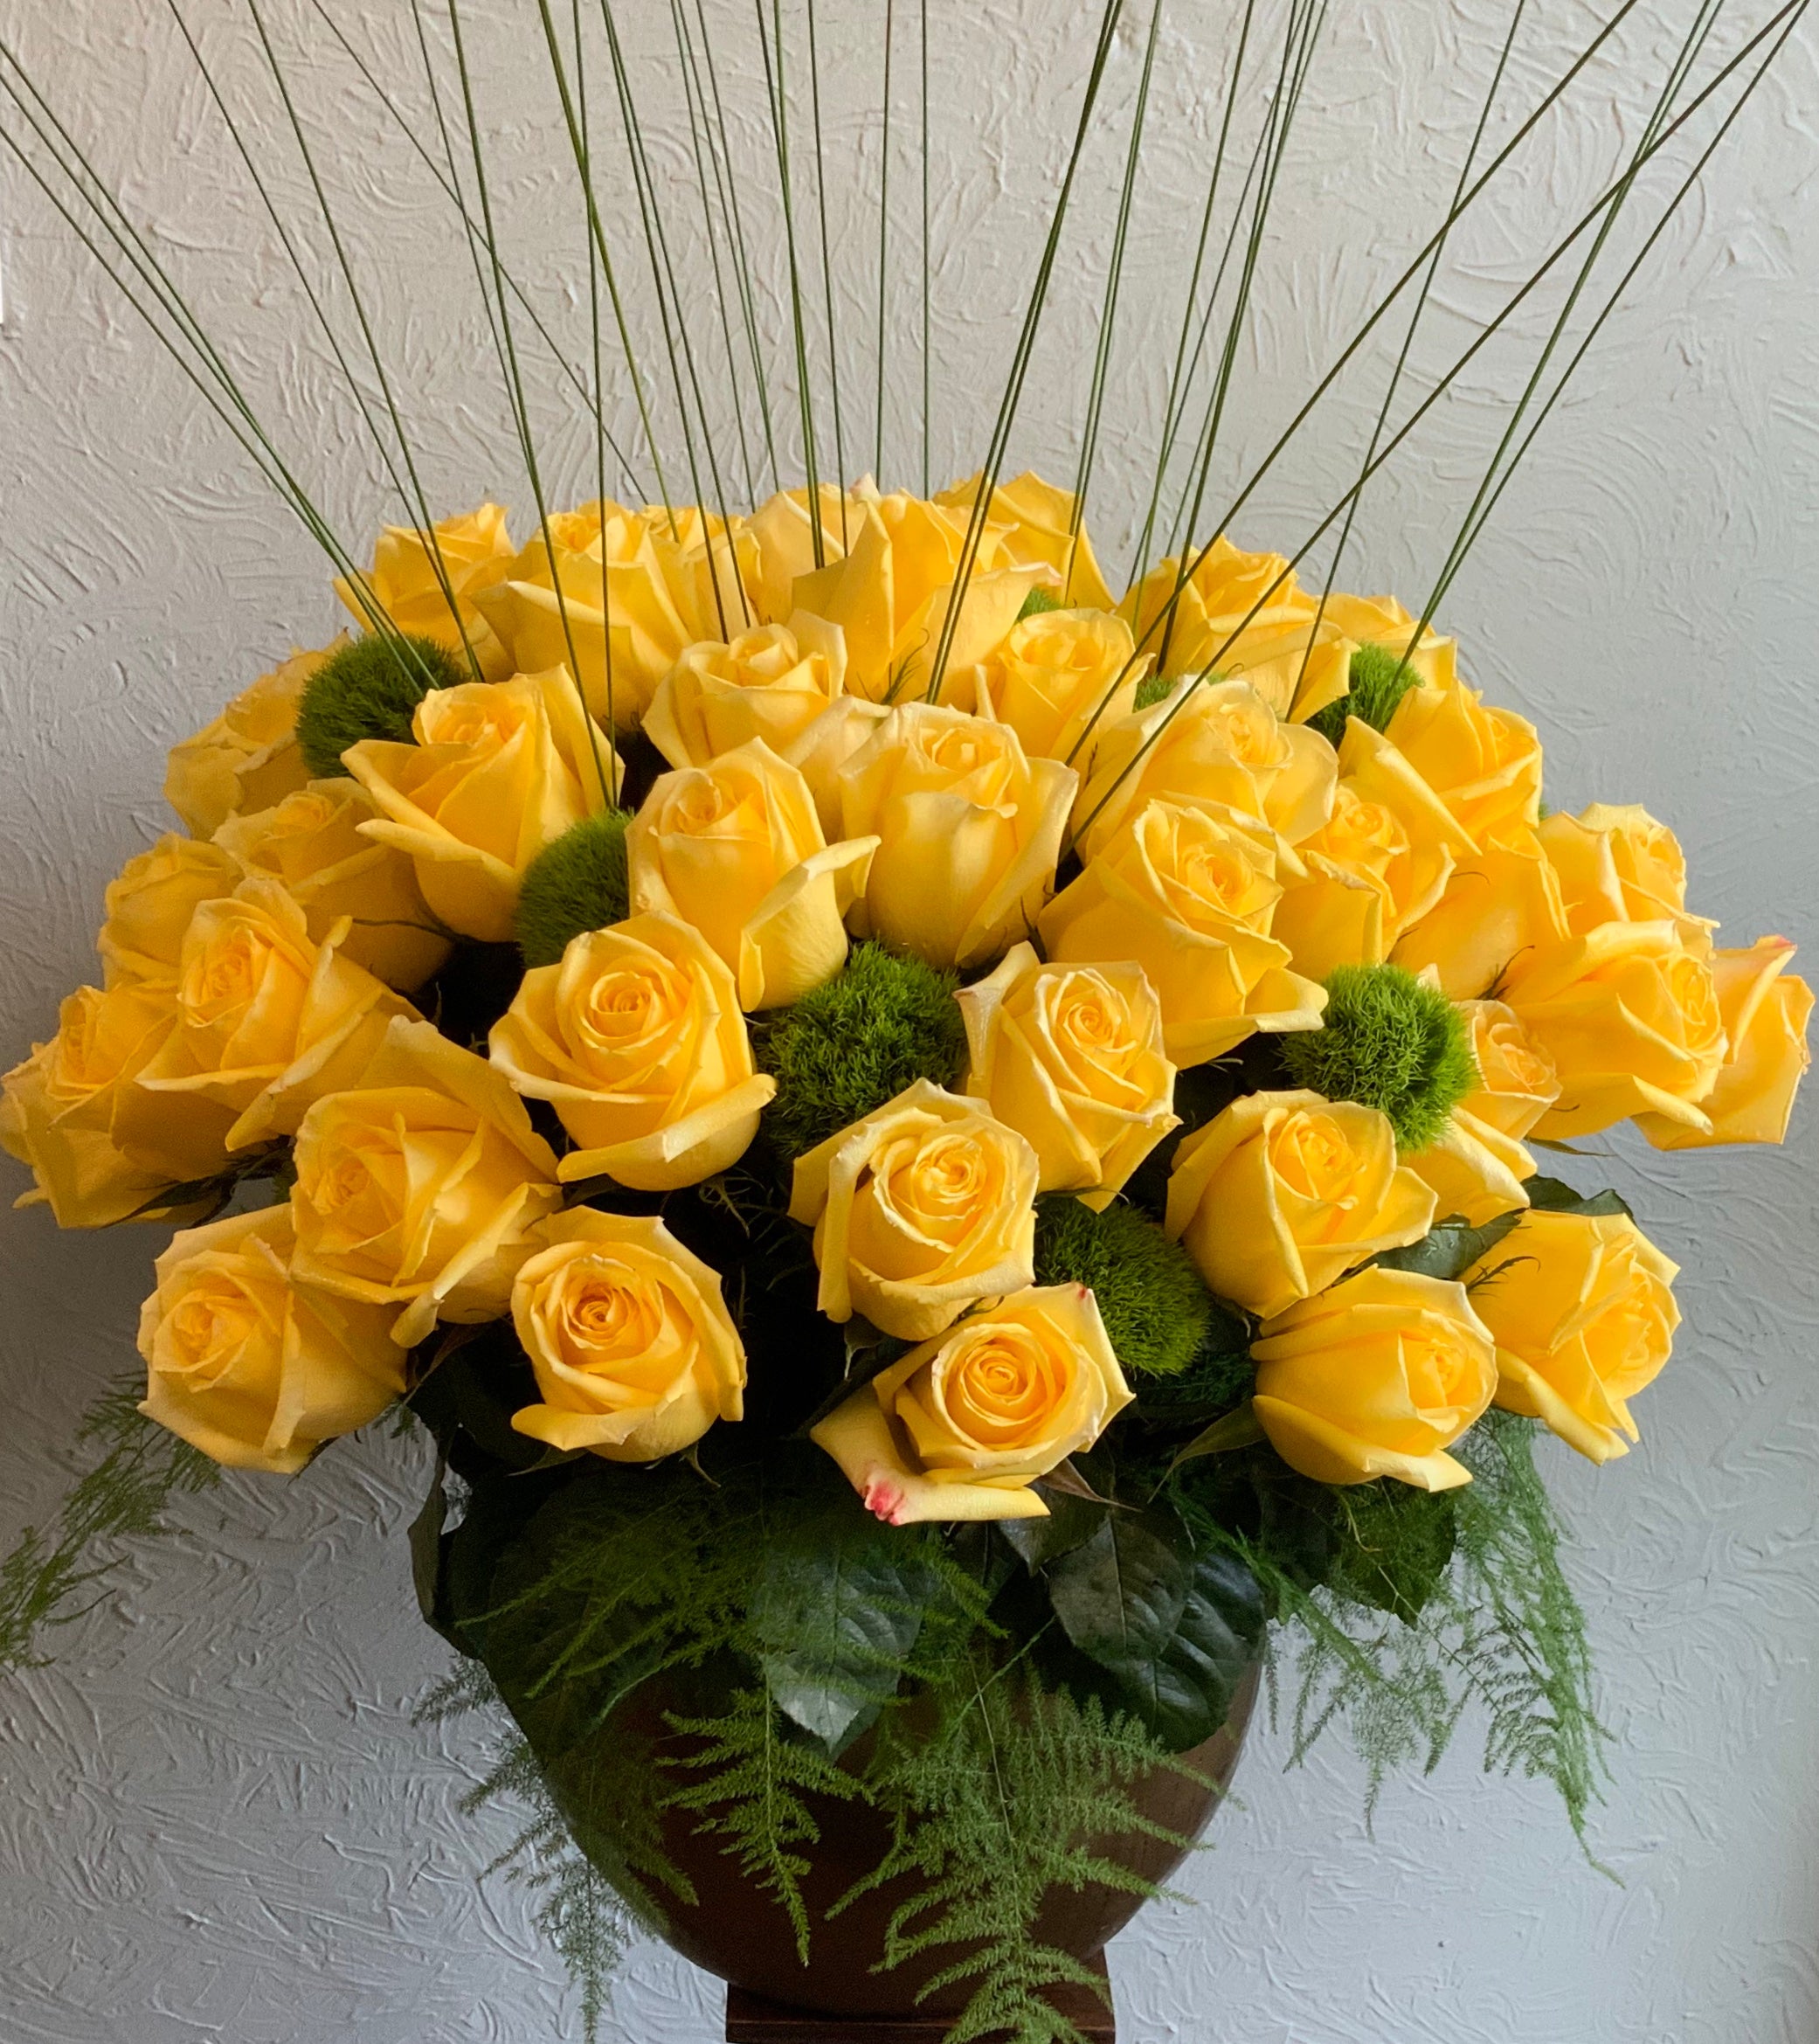 Roses - 5 dozen roses in a vase or urn